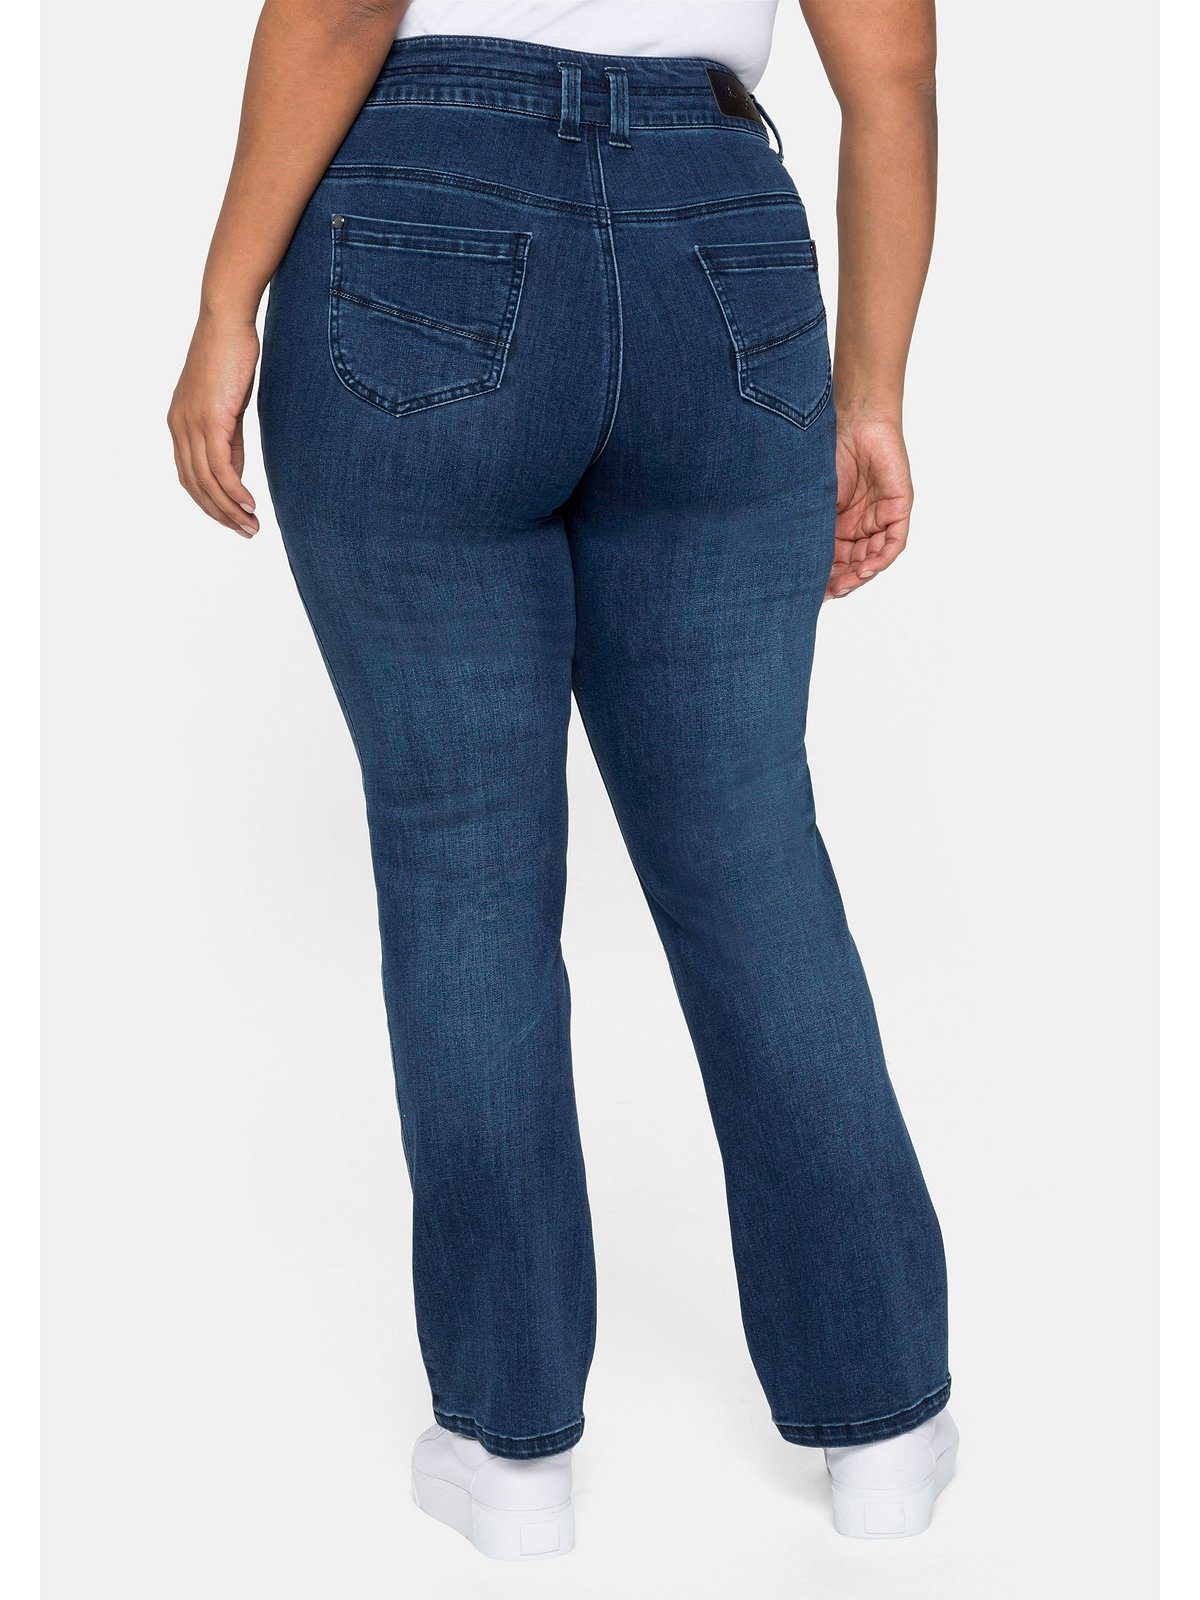 Sheego Gerade Jeans Große Größen Taille MANUELA schmale Oberschenkel kräftige für und eine